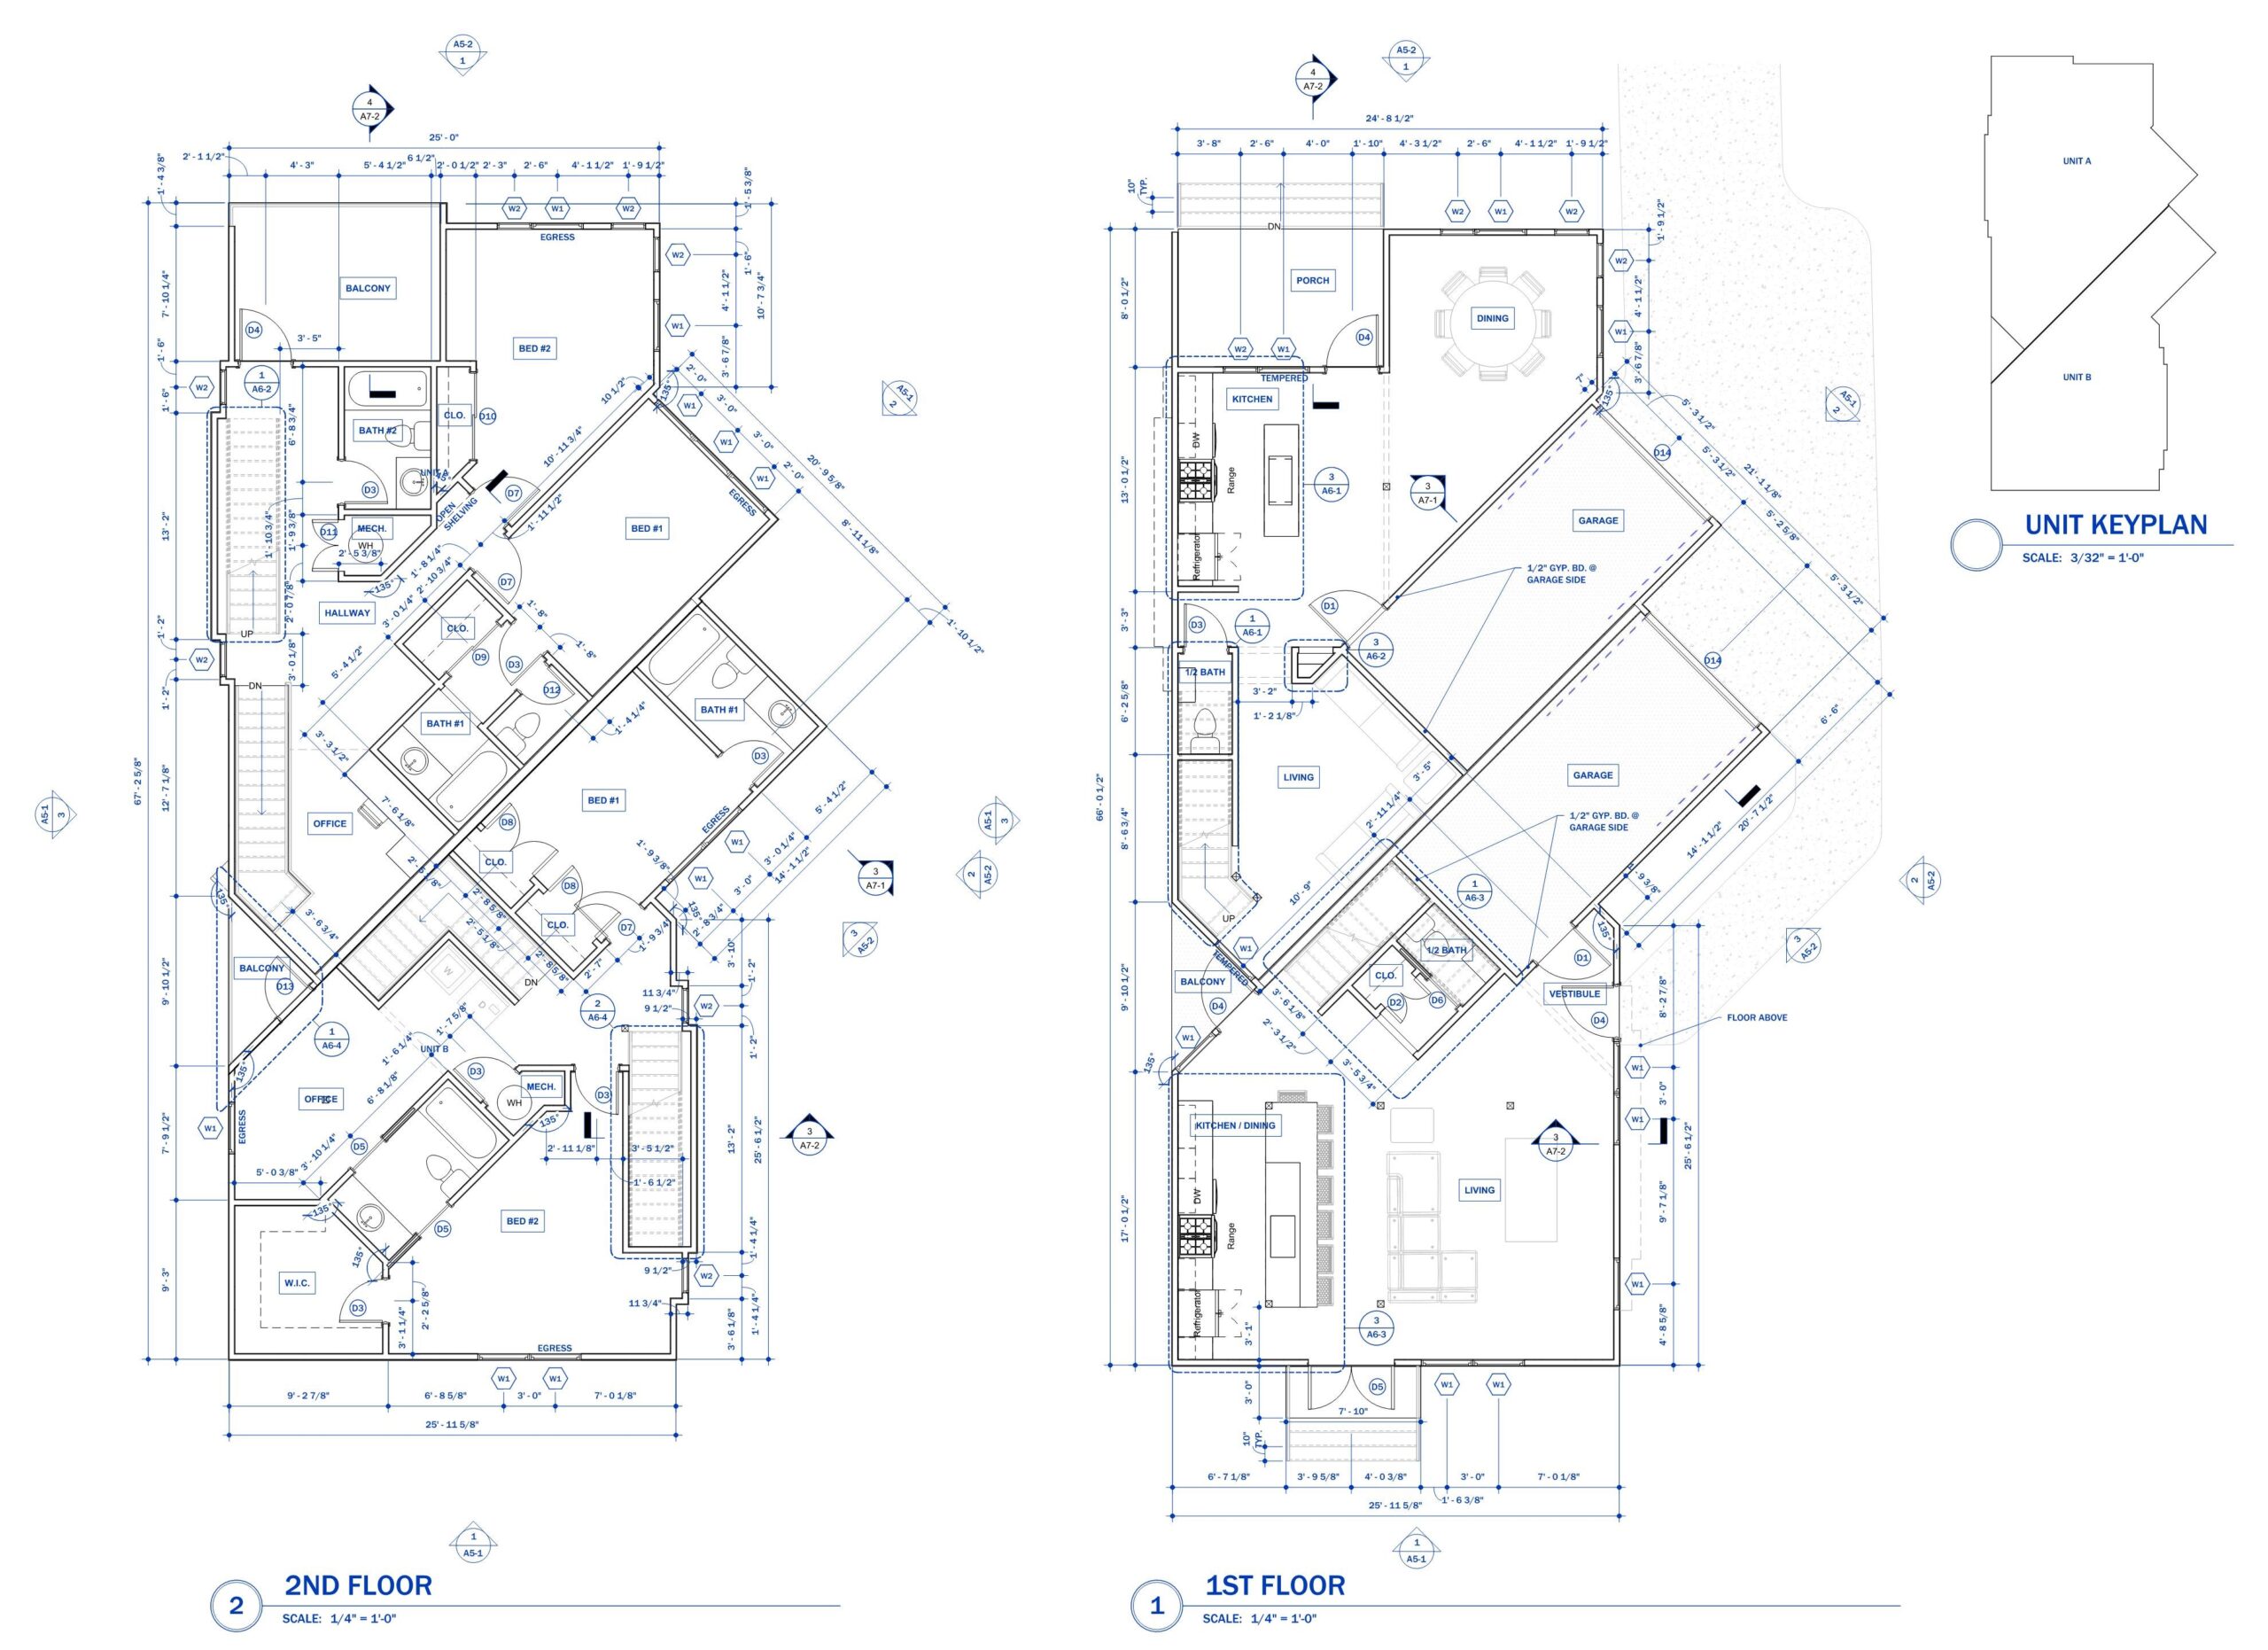 Construction Document Floor Plans – Ladd St Duplex